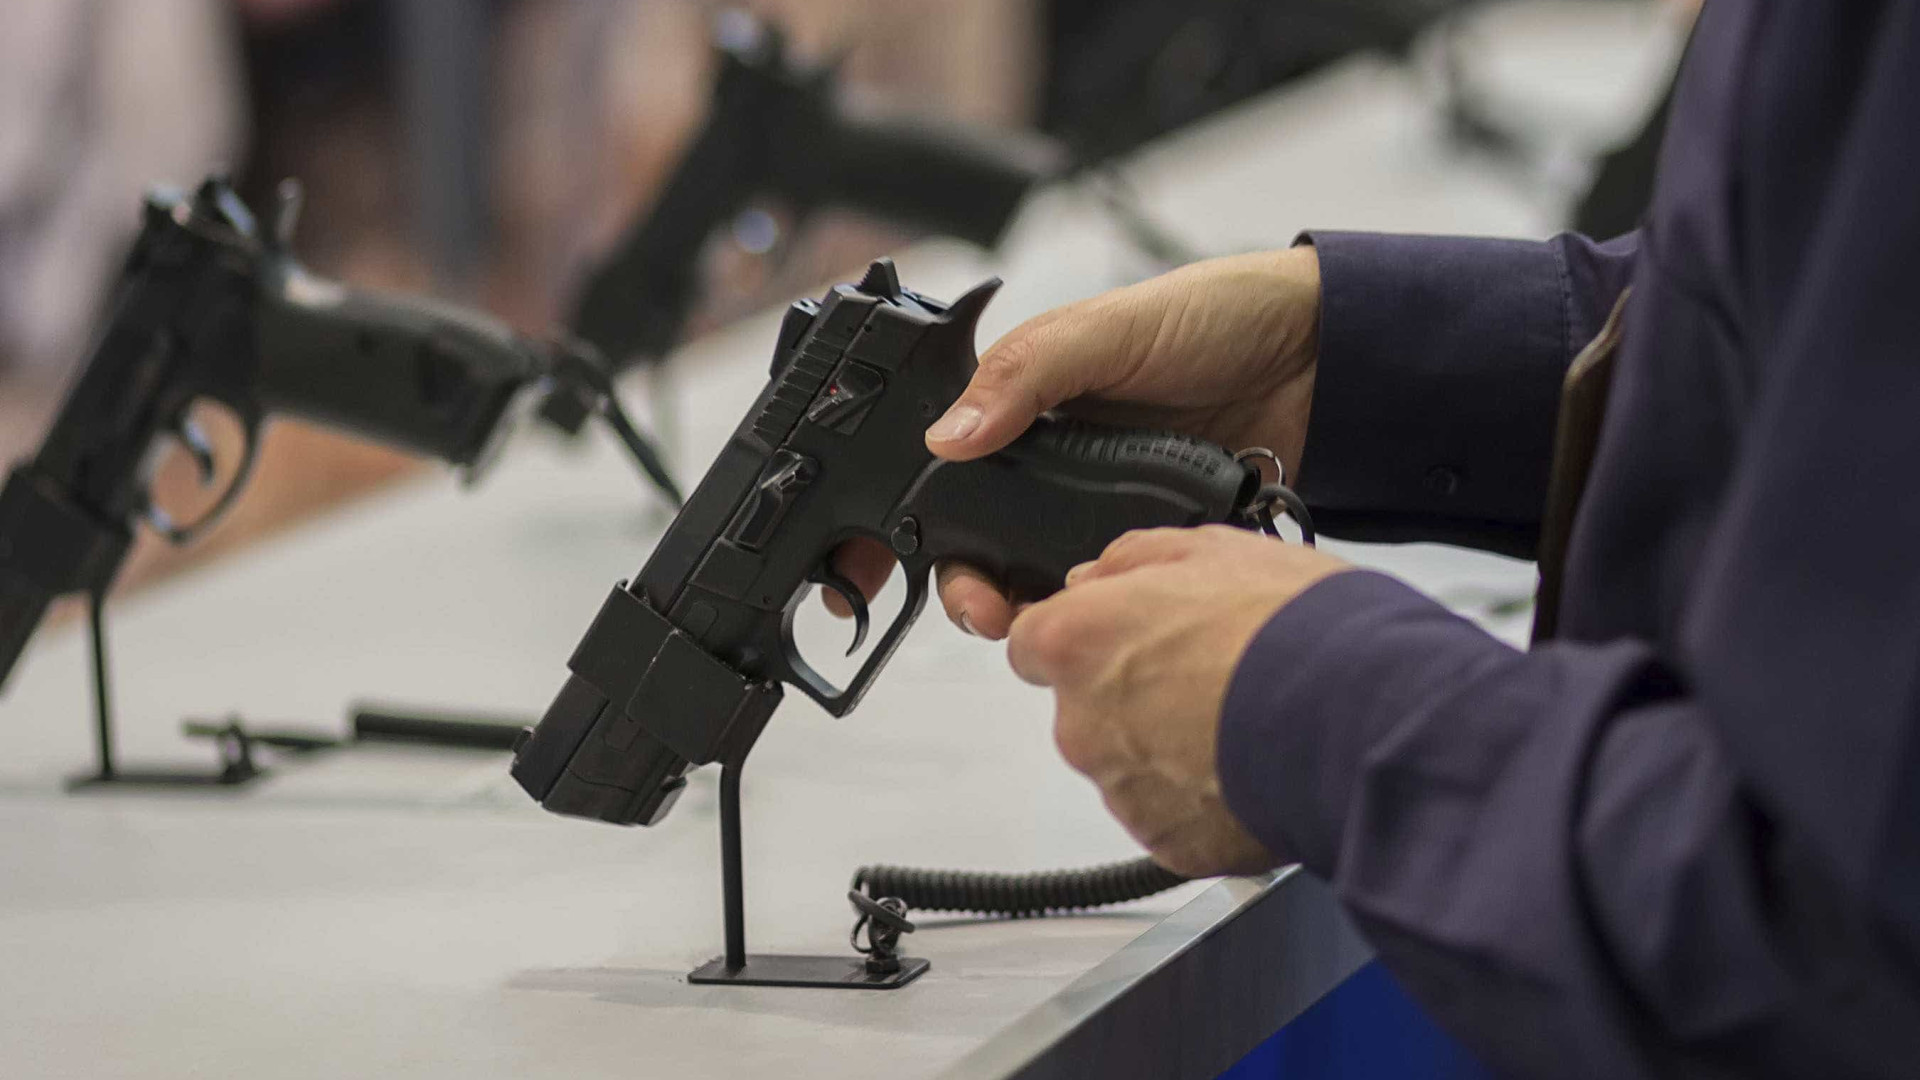 Projeto que libera estados legislarem sobre armas avança na Câmara